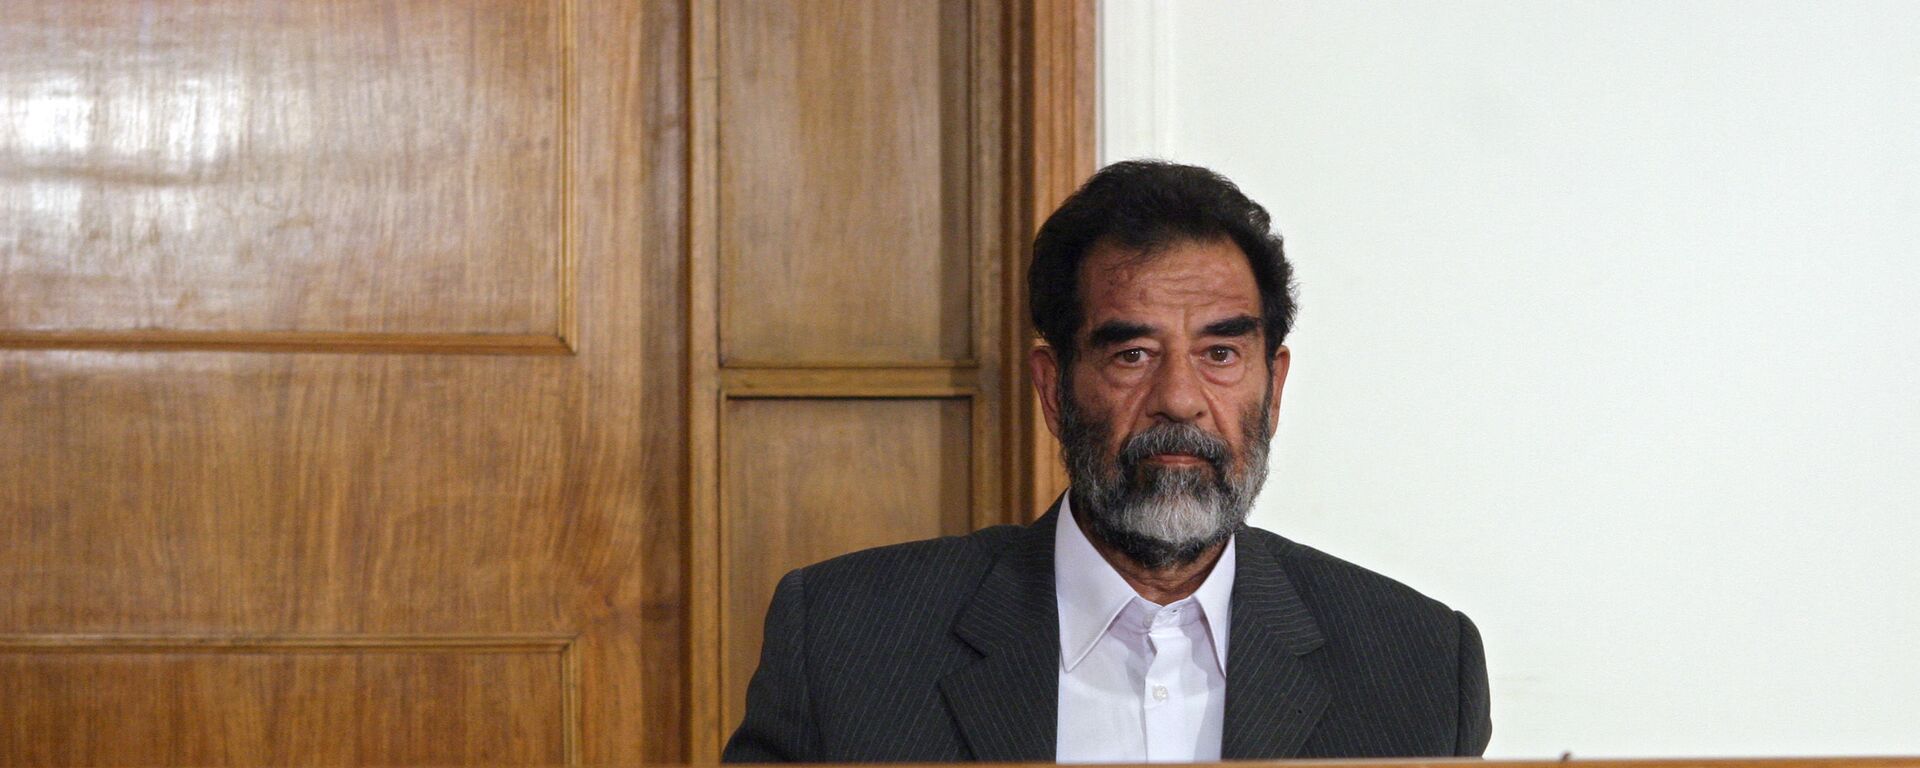 Бывший иракский диктатор Саддам Хусейн сидит в зале суда в Багдаде во время своего первого выступления перед судьей, где он заслушивает ряд обвинений, которые, как ожидается, будут включать геноцид, военные преступления и преступления против человечности 1 июля 2004 года. Одиннадцать высокопоставленных членов его режима, включая бывшего заместителя. премьер-министр Тарек Азиз и советник президента Али Хасан аль-Маджид также предстанут перед судом. - Sputnik Абхазия, 1920, 08.02.2021